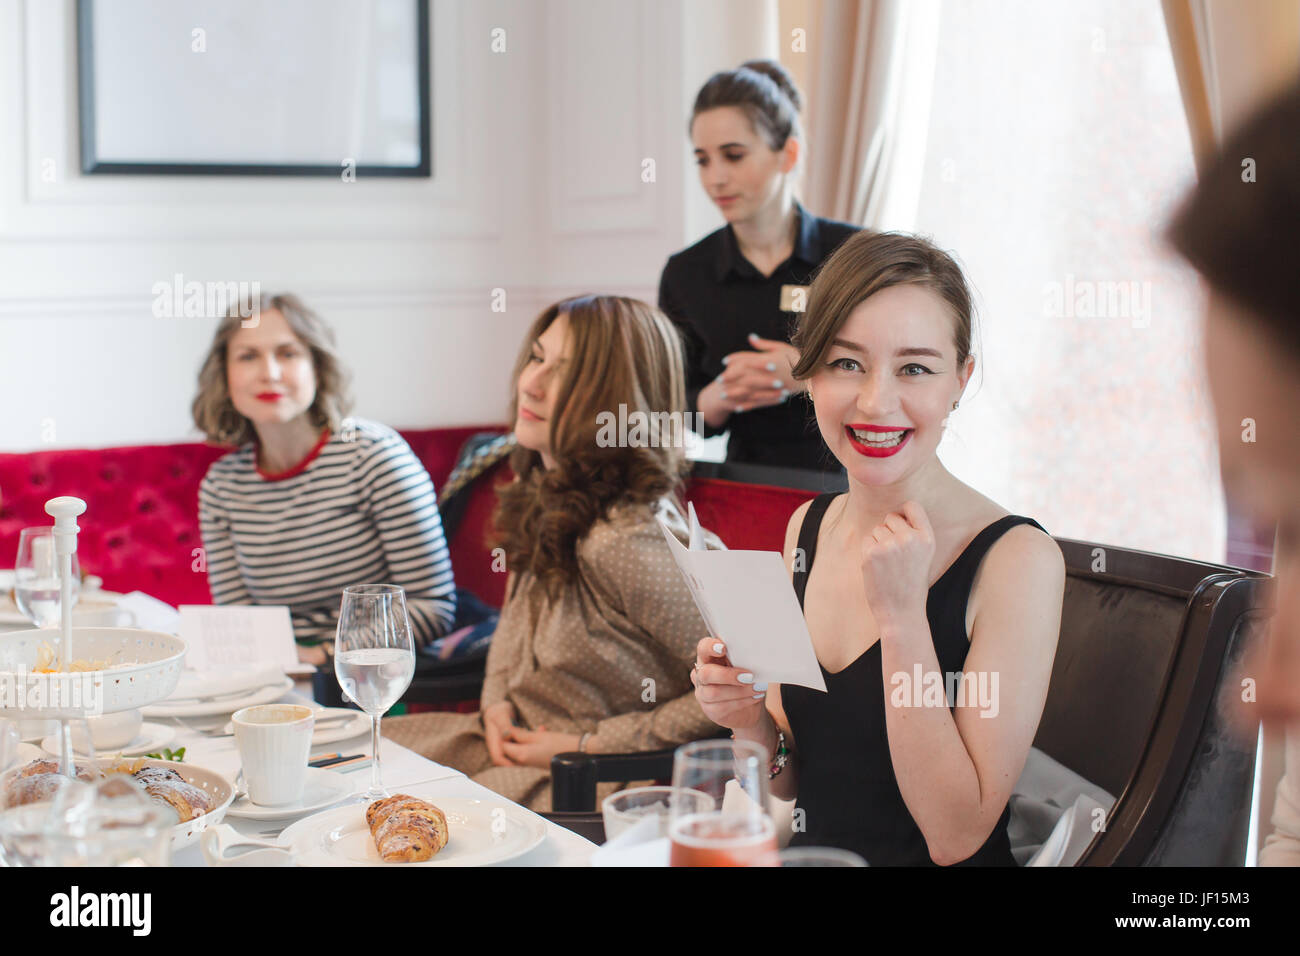 Les femmes assises à table servi Banque D'Images